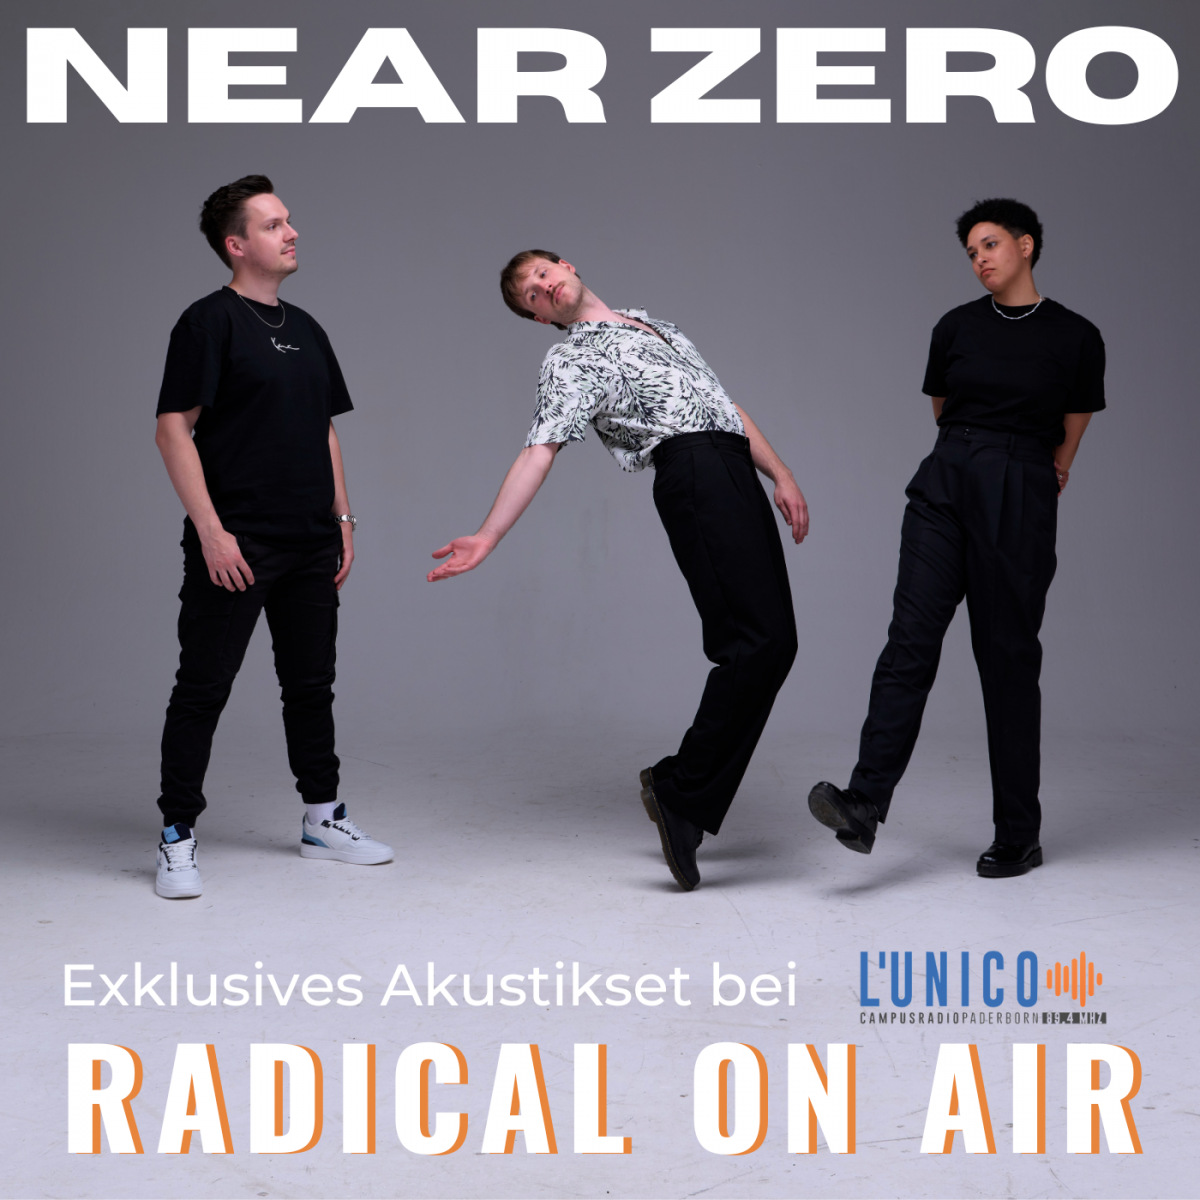 Radical on air(2)